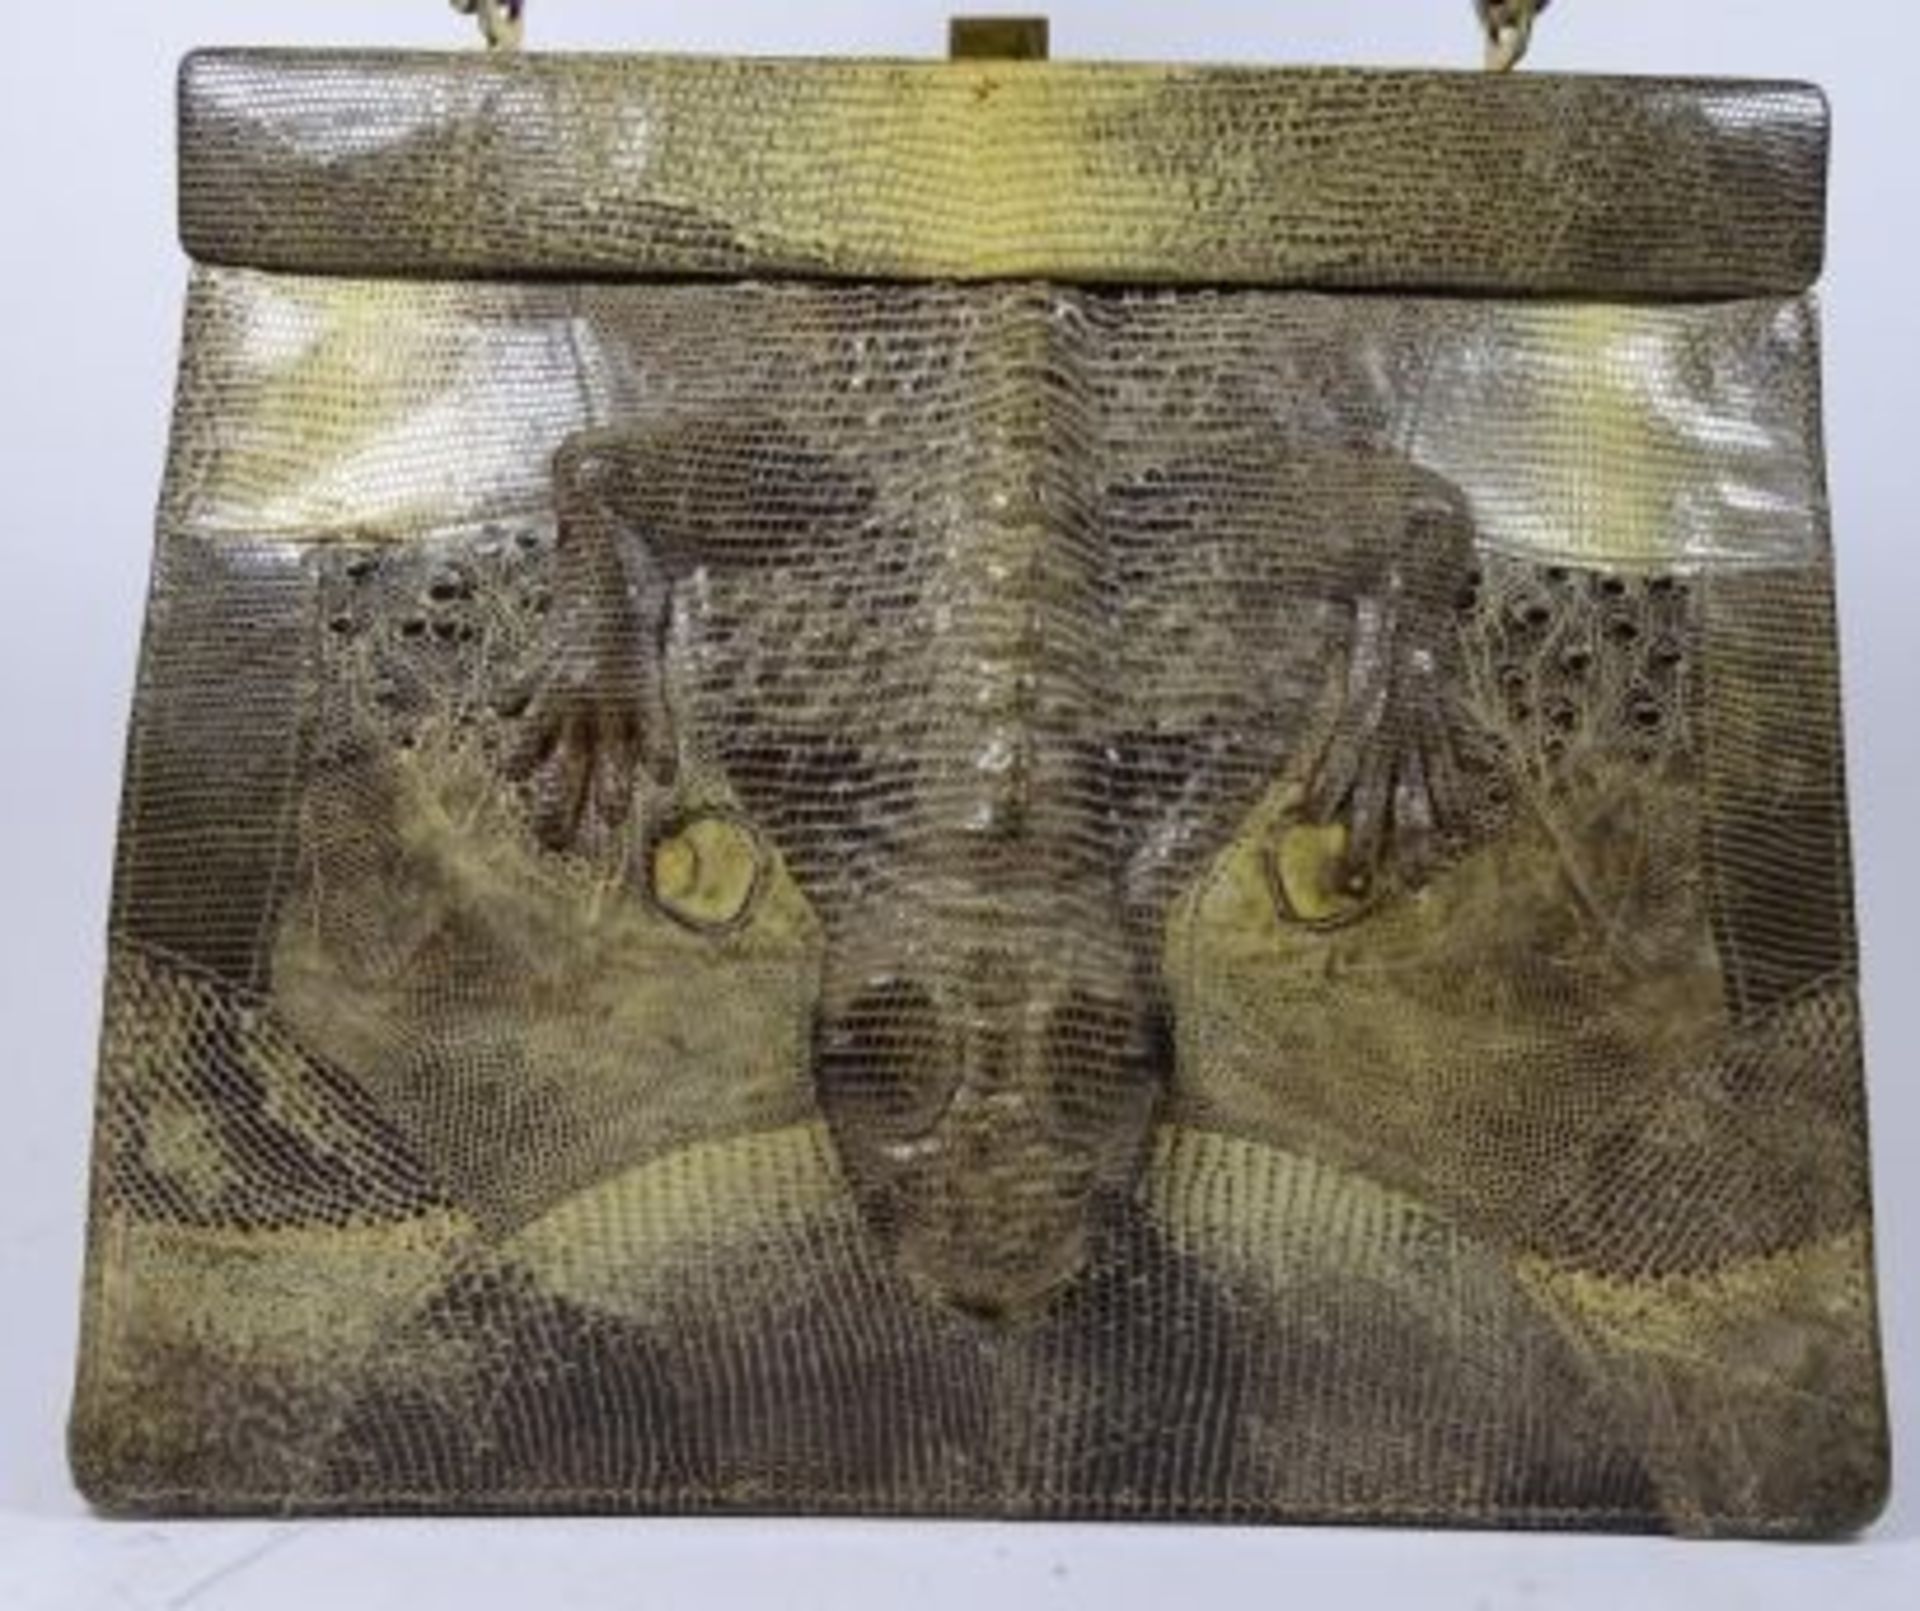 Krokoleder-Handtasche, H-21 cm, B-24 cm - Bild 2 aus 4